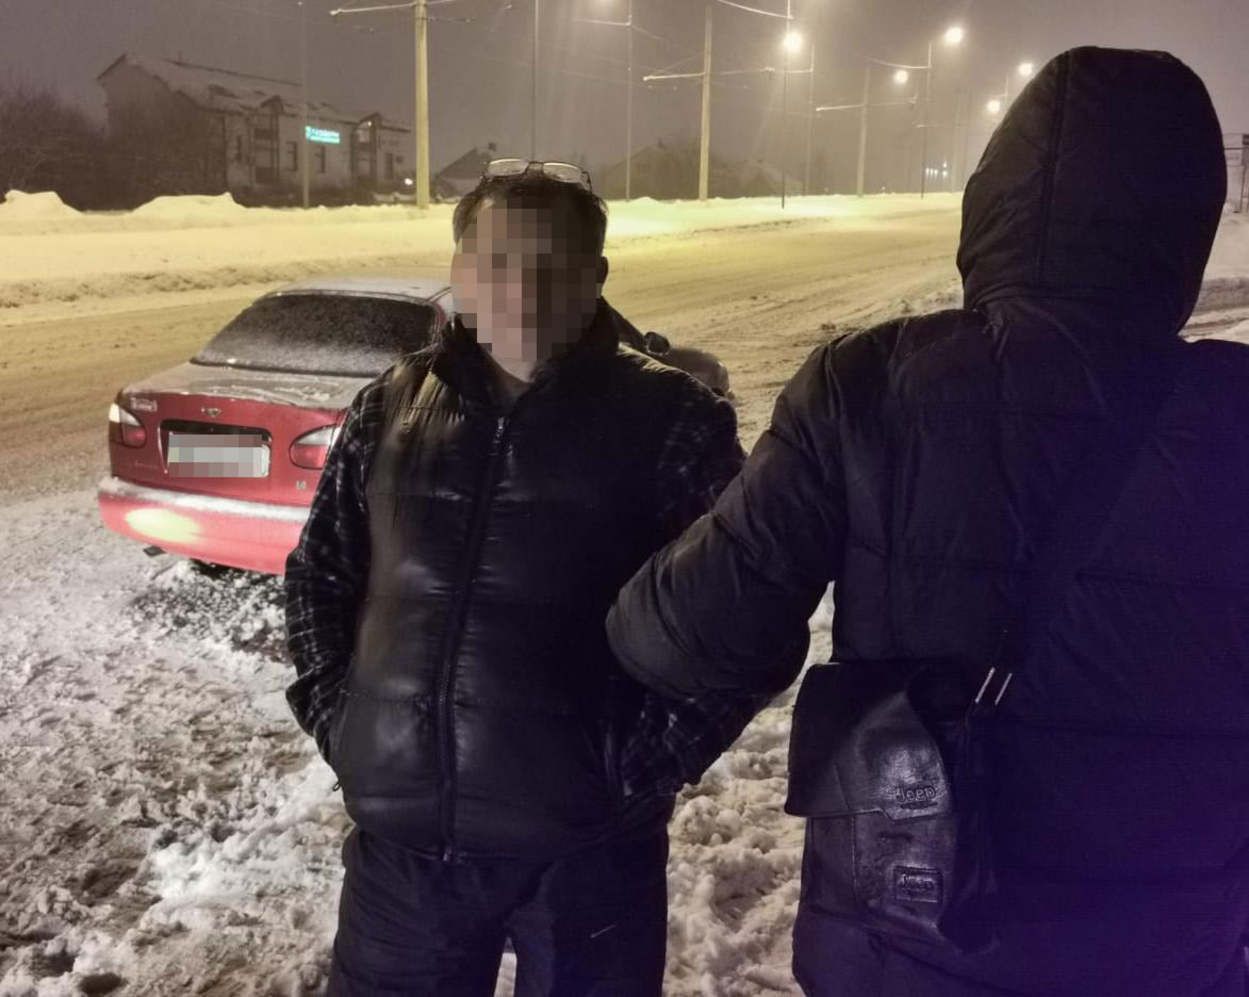 Хотел продать 45 граммов метадона: во Львове задержали наркоторговца – фото